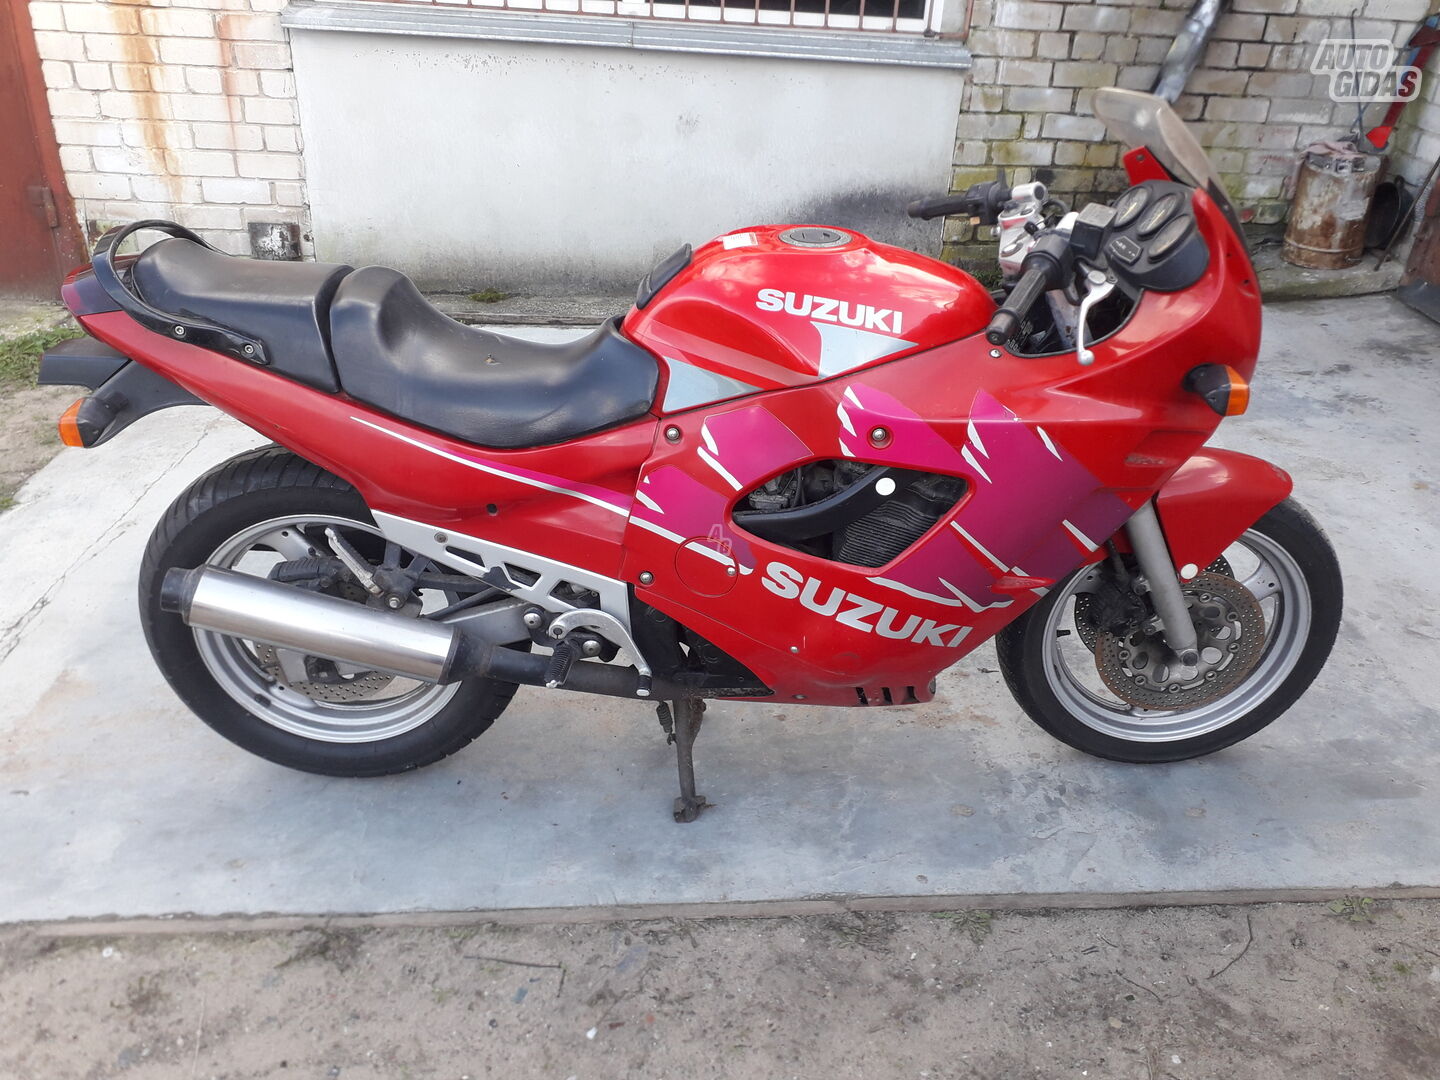 Suzuki GSX-F / Katana 1993 y Sport / Superbike motorcycle